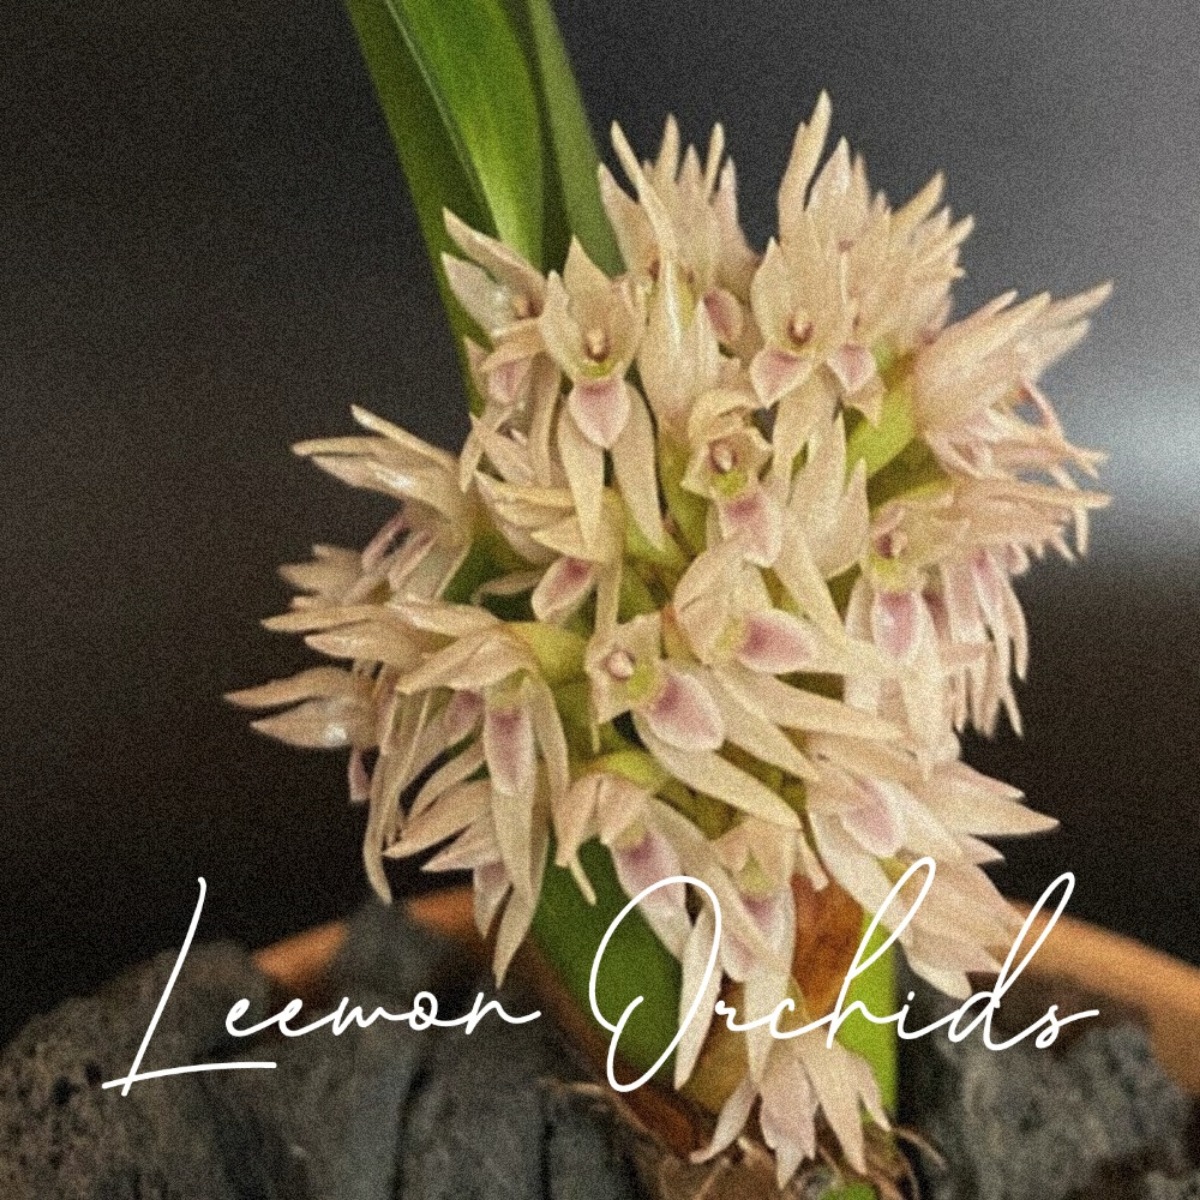 막실라리라 덴사 Maxillaria densa